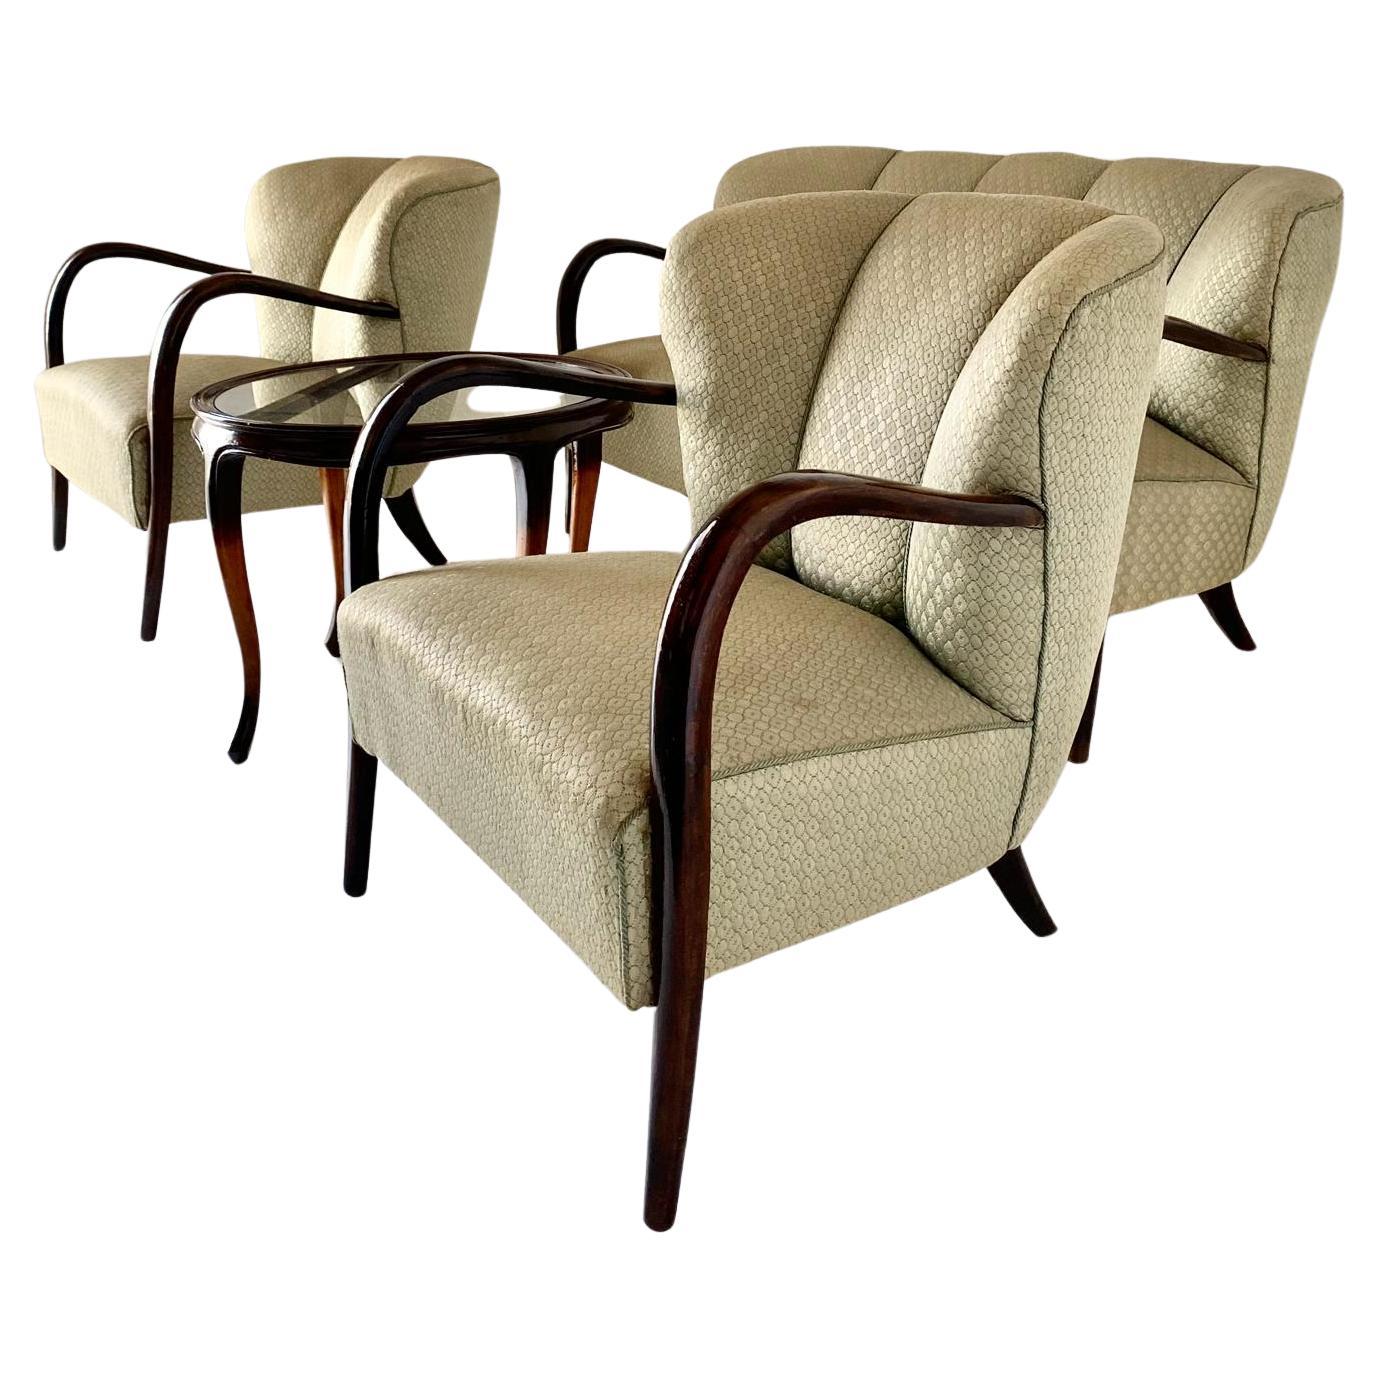 Eine seltene Wohnzimmergarnitur im Art-Déco-Stil der 1950er Jahre von Malatesta und Mason. Das in Italien gefertigte Set besteht aus zwei Sesseln und einem zweisitzigen Sofa sowie einem geschwungenen Couchtisch aus Massivholz mit Glasplatte. Sowohl